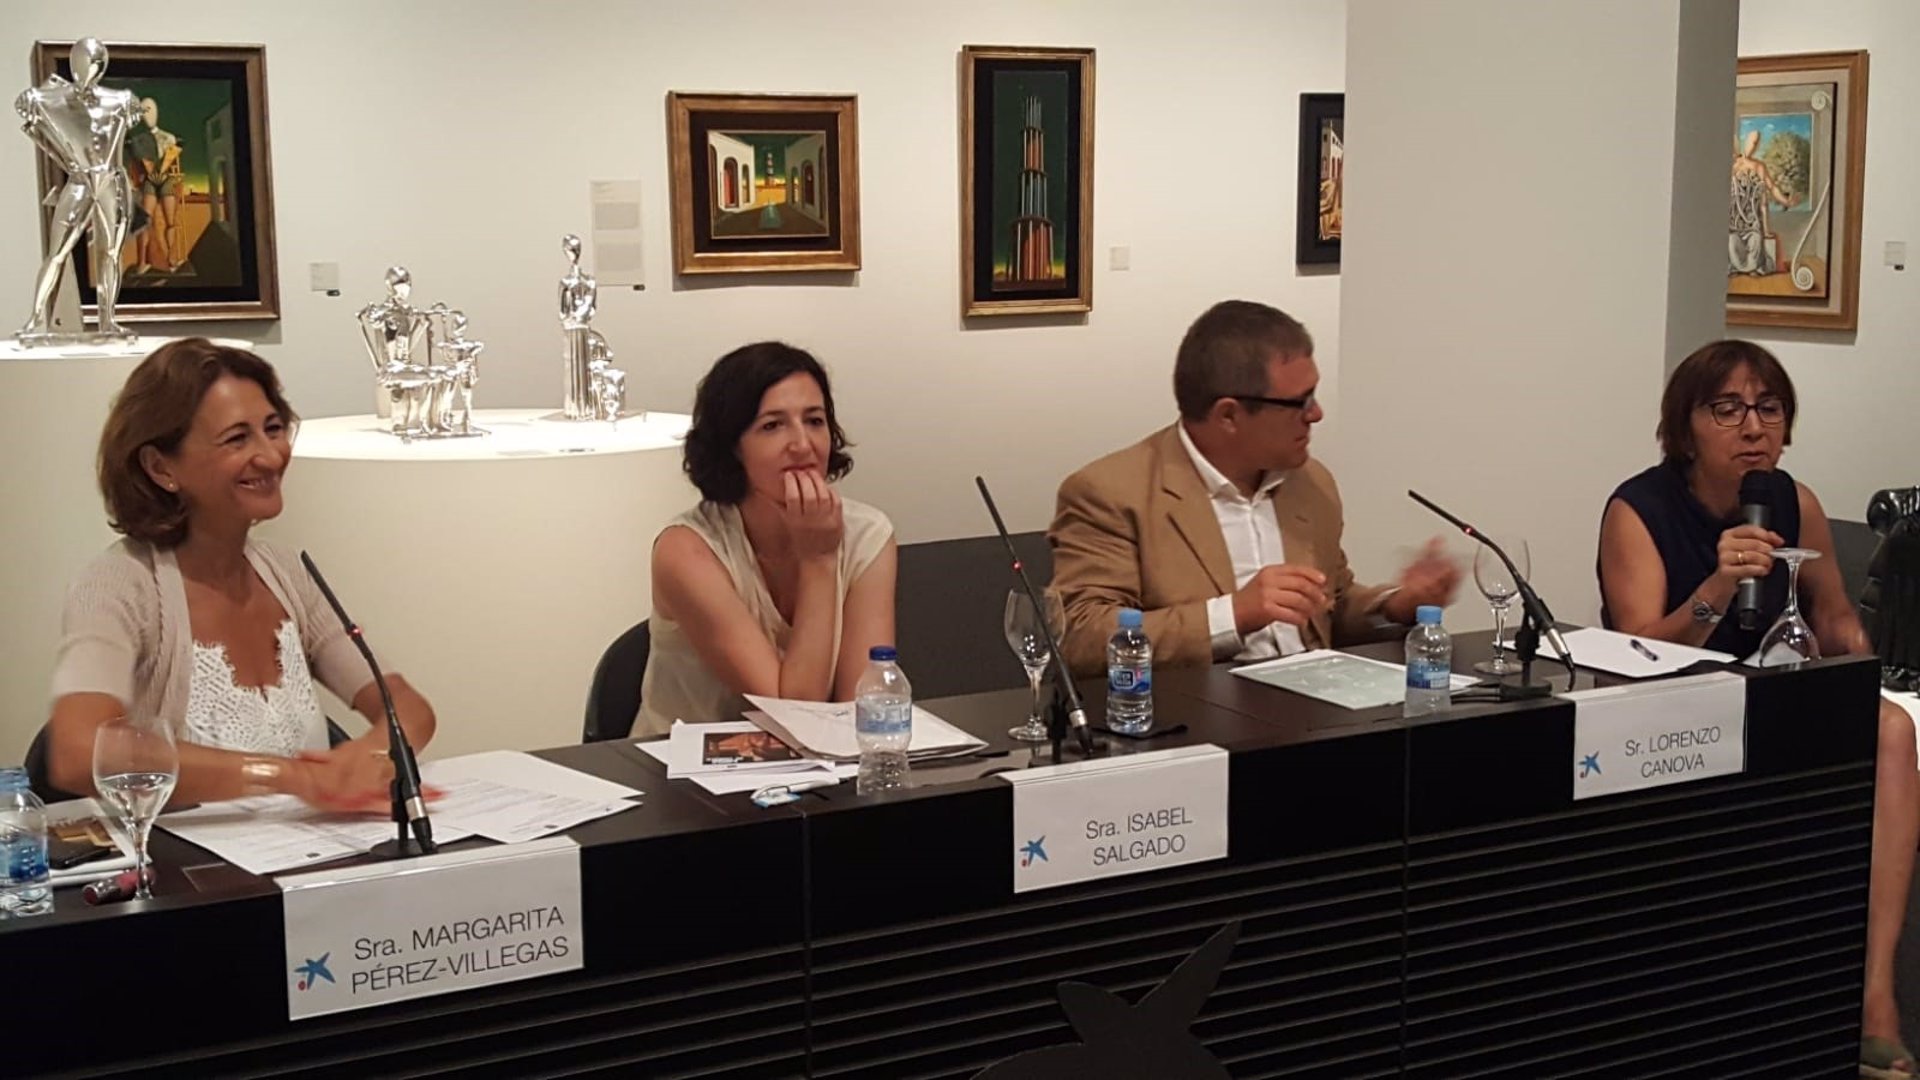 La exposición cultural de Giorgio de Chirico reúne en Palma 60 obras del artista